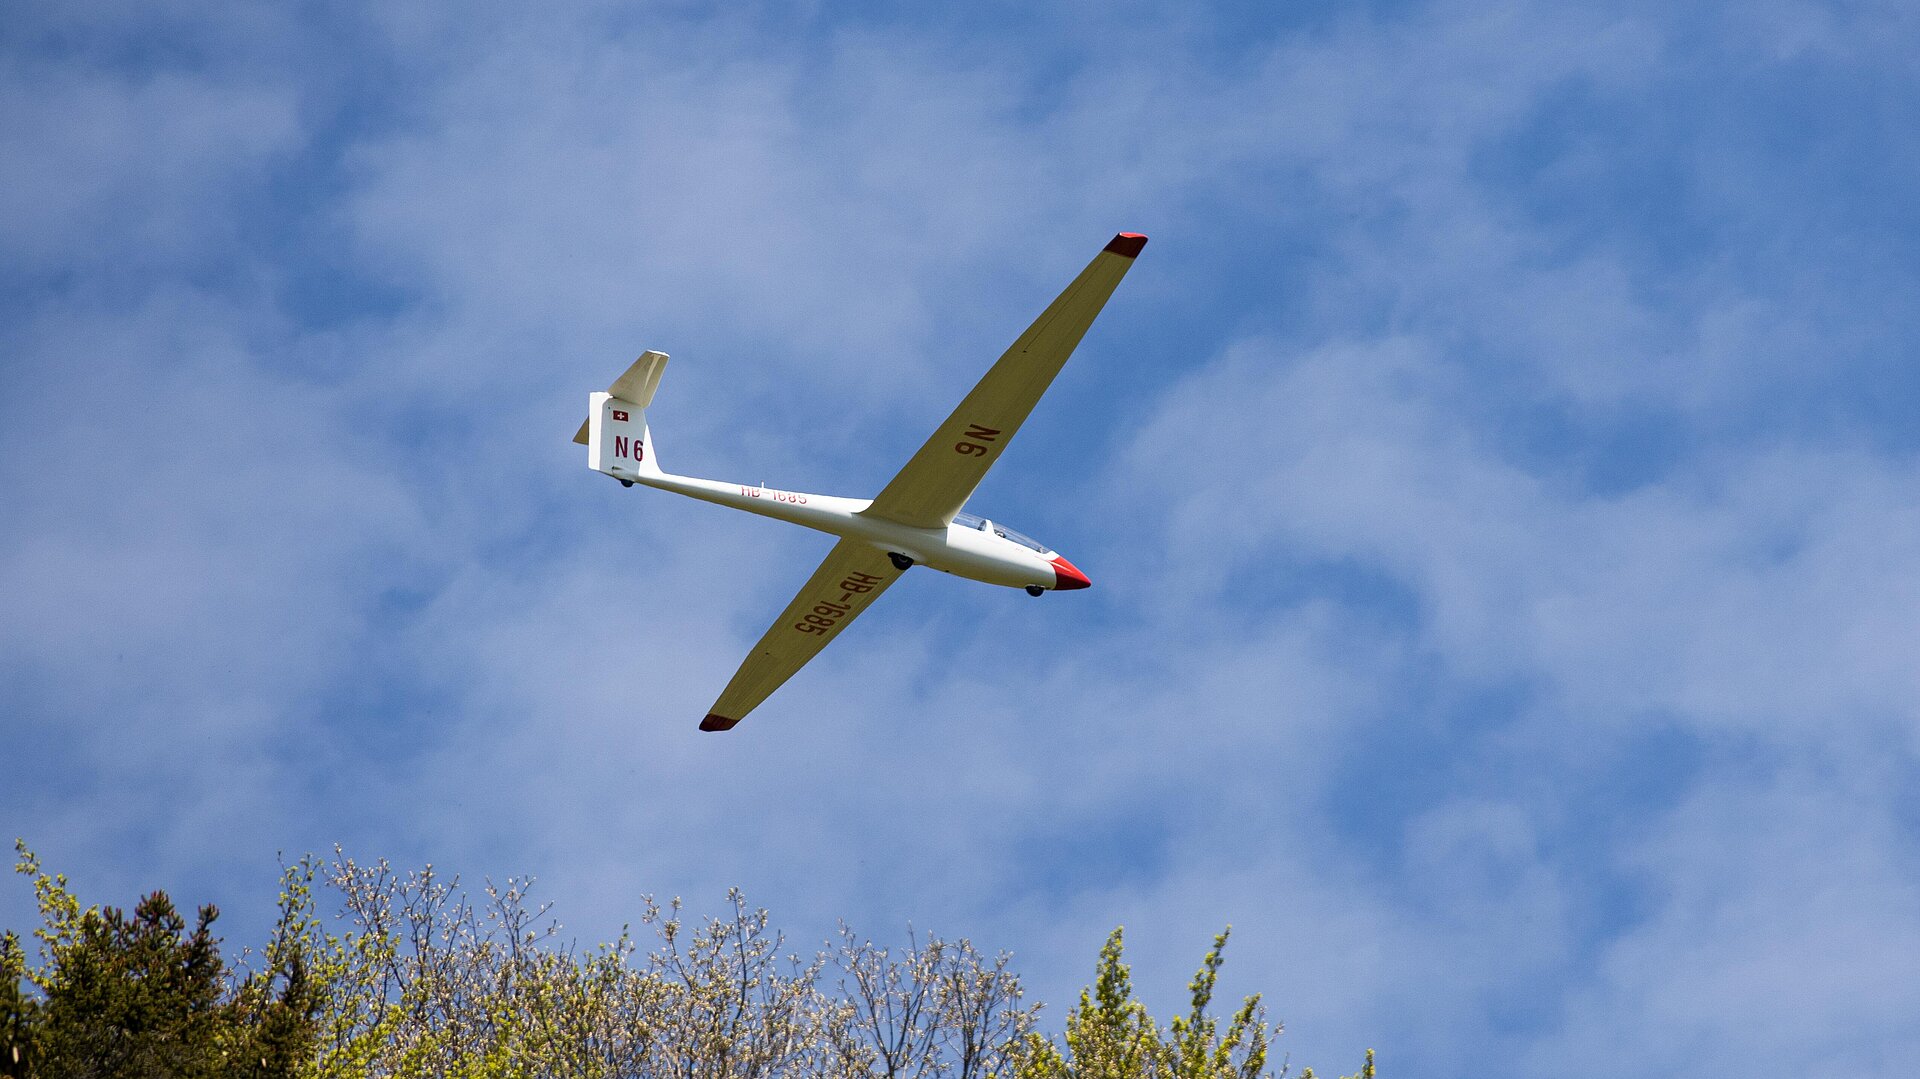 Segelfliegen in Bad Kissingen - Segelflugzeug am Himmel